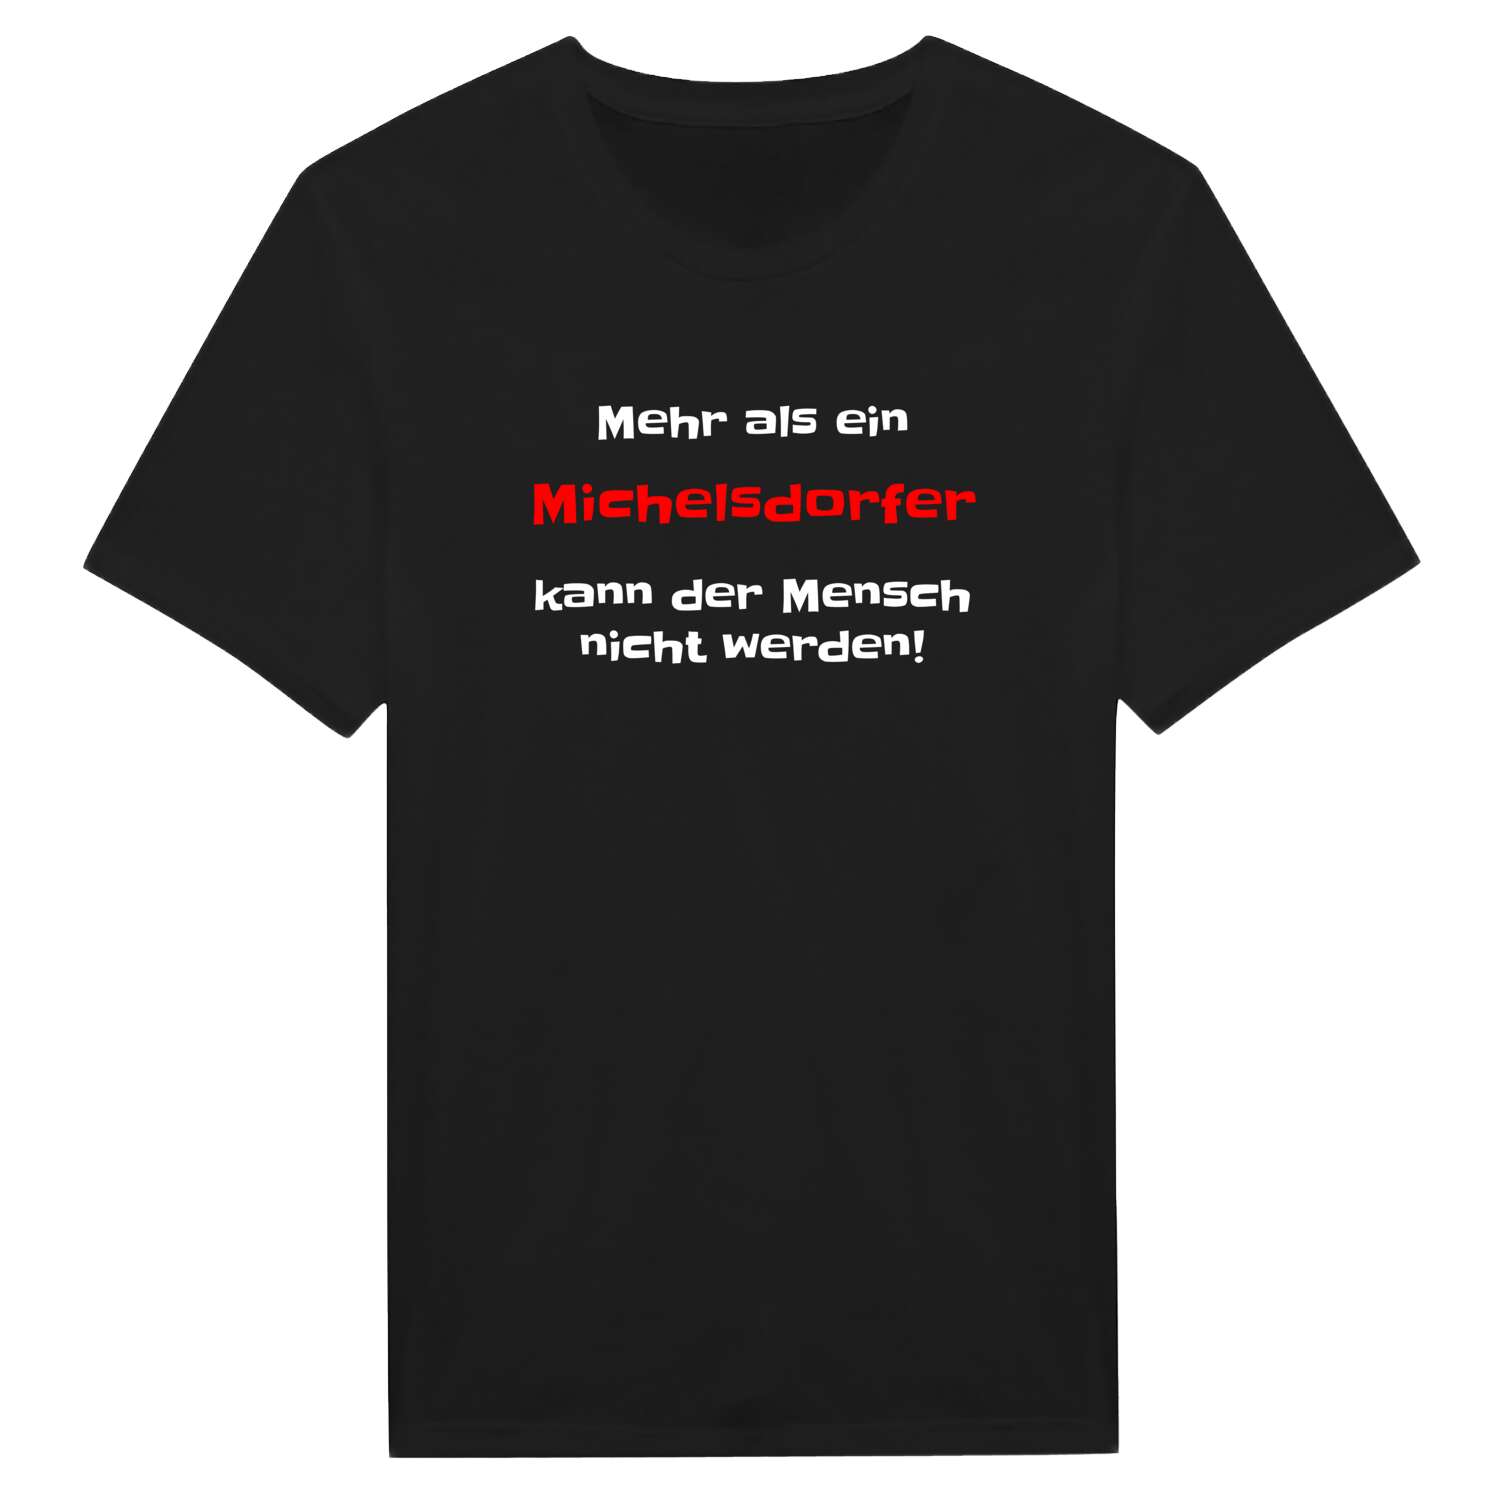 Michelsdorf T-Shirt »Mehr als ein«